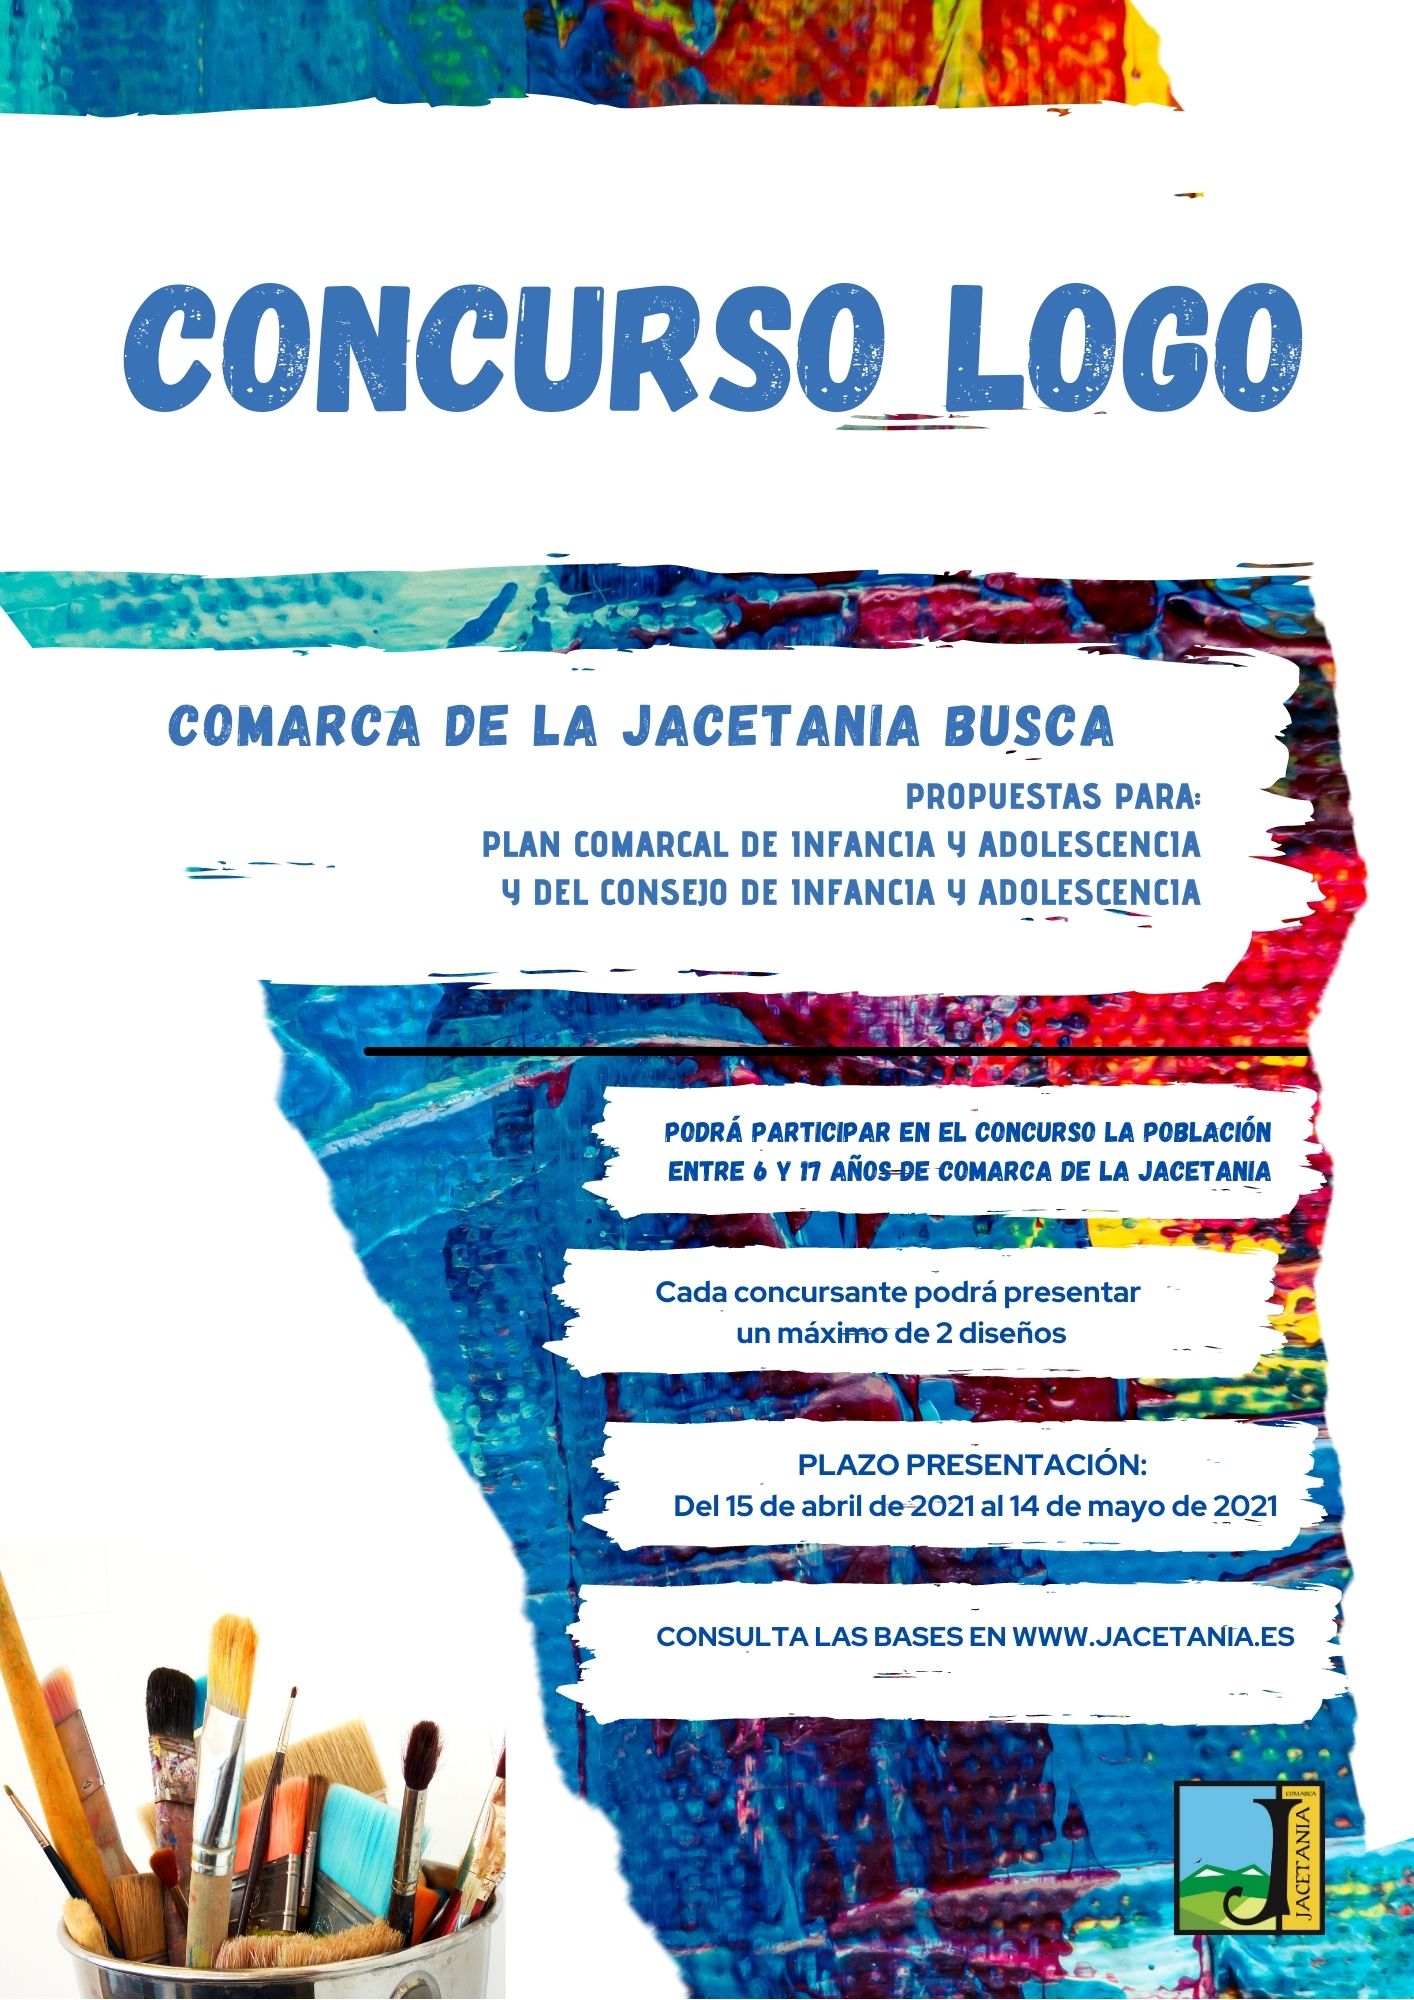 Concurso para elegir el logotipo del Plan y Consejo de Infancia y Adolescencia de la Comarca de la Jacetania